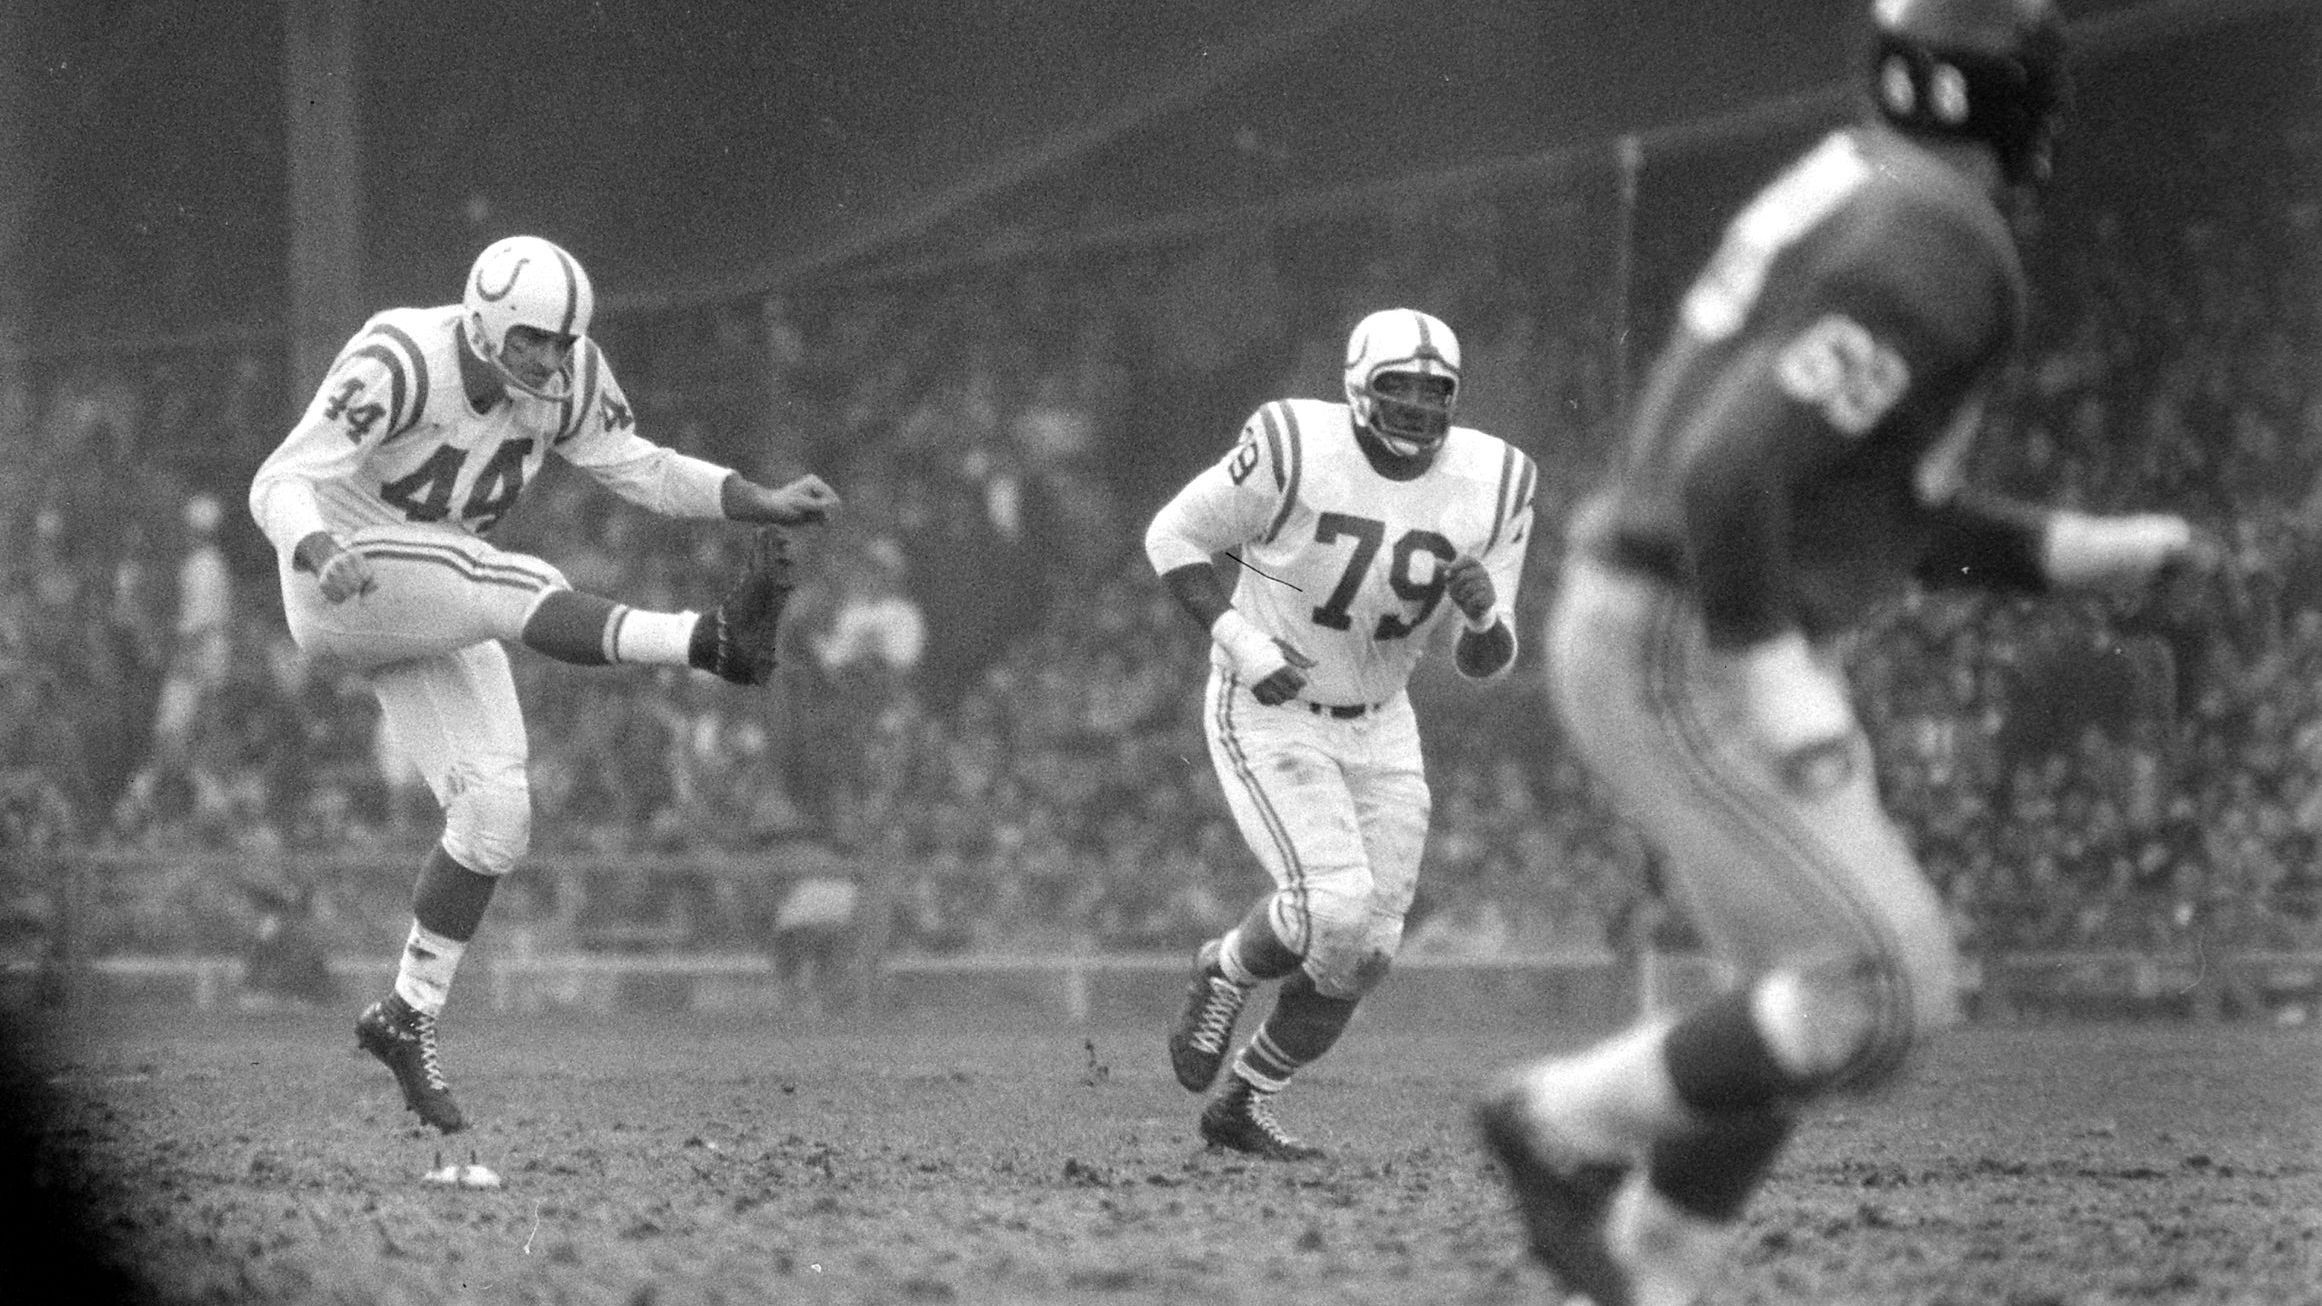 <strong>Platz 2: Baltimore Colts von 1958 (Bilanz: 9-3, NFL-Champions, Head Coach: Weeb Ewbank)</strong><br>"Die Colts von 1958 haben nicht nur eine Meisterschaft gewonnen. Sie haben den Profi-Football in den USA für immer verändert", heißt es im Fachmagazin. Mit dem dramatischen 23:17-Sieg der Colts im Championship Game gegen die New York Giants habe der American Football begonnen, dem Baseball in den USA den Rang als populärste Sportart abzulaufen.